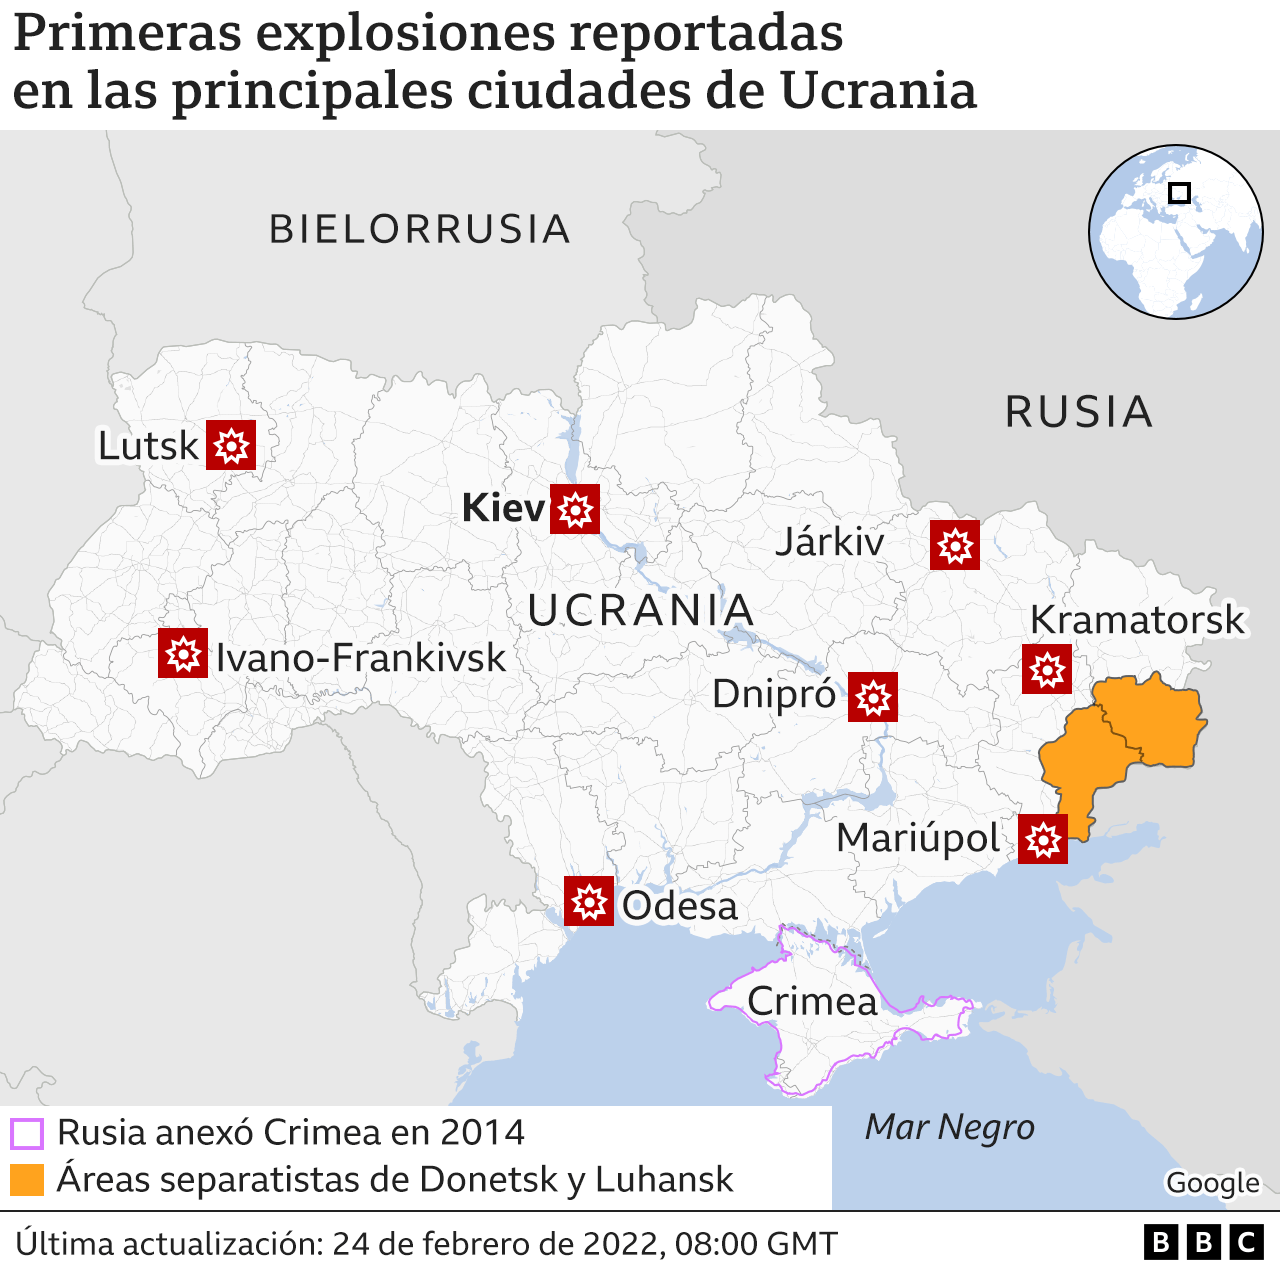 Mapa de las ciudades donde se reportaron las primeras explosiones